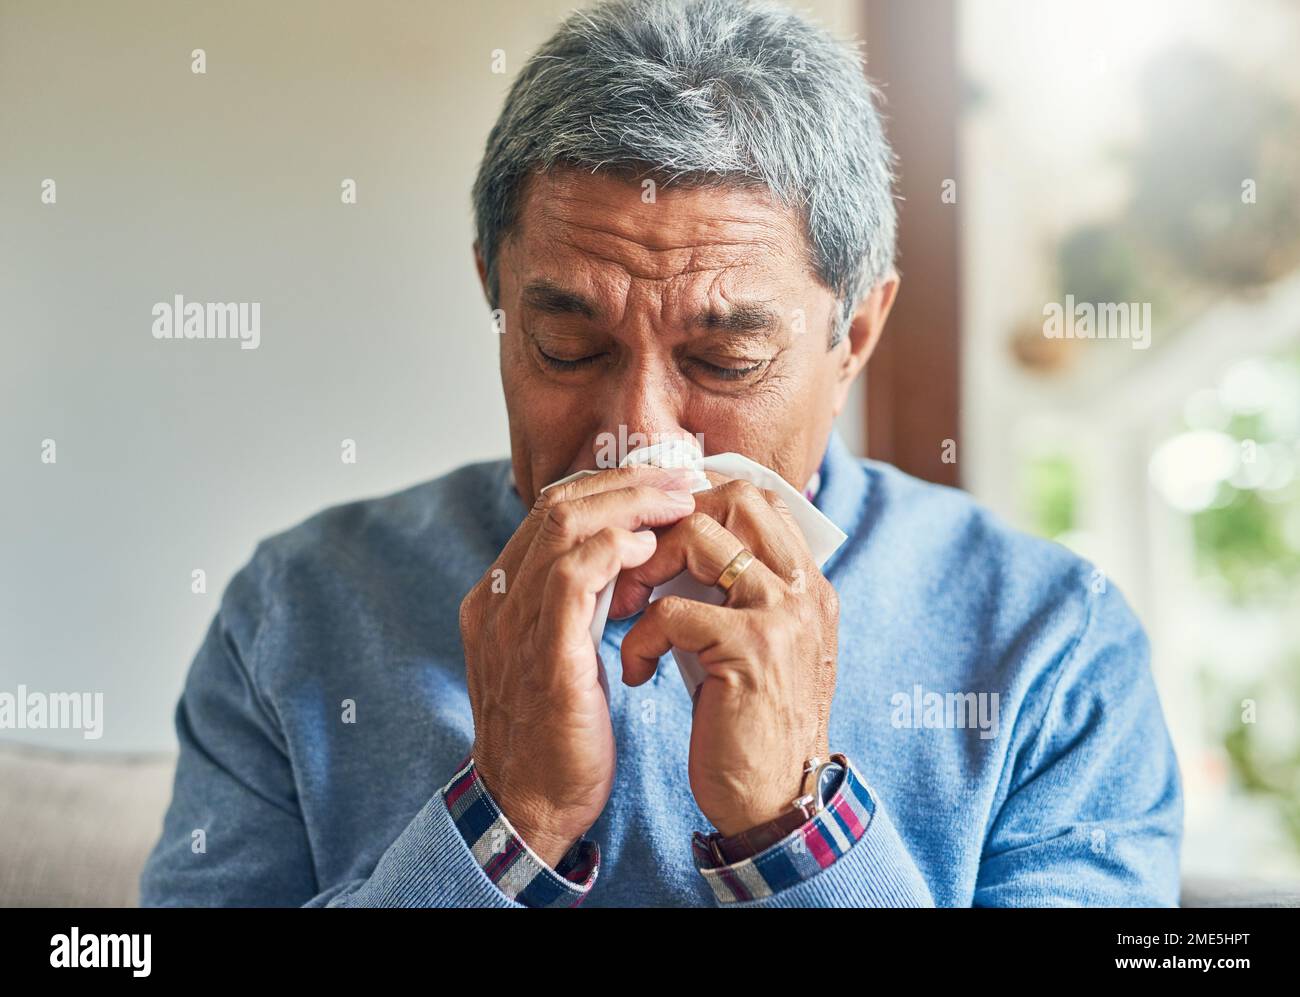 Les allergies sont les pires. un homme âgé malade soufflant son nez avec un tissu à la maison. Banque D'Images